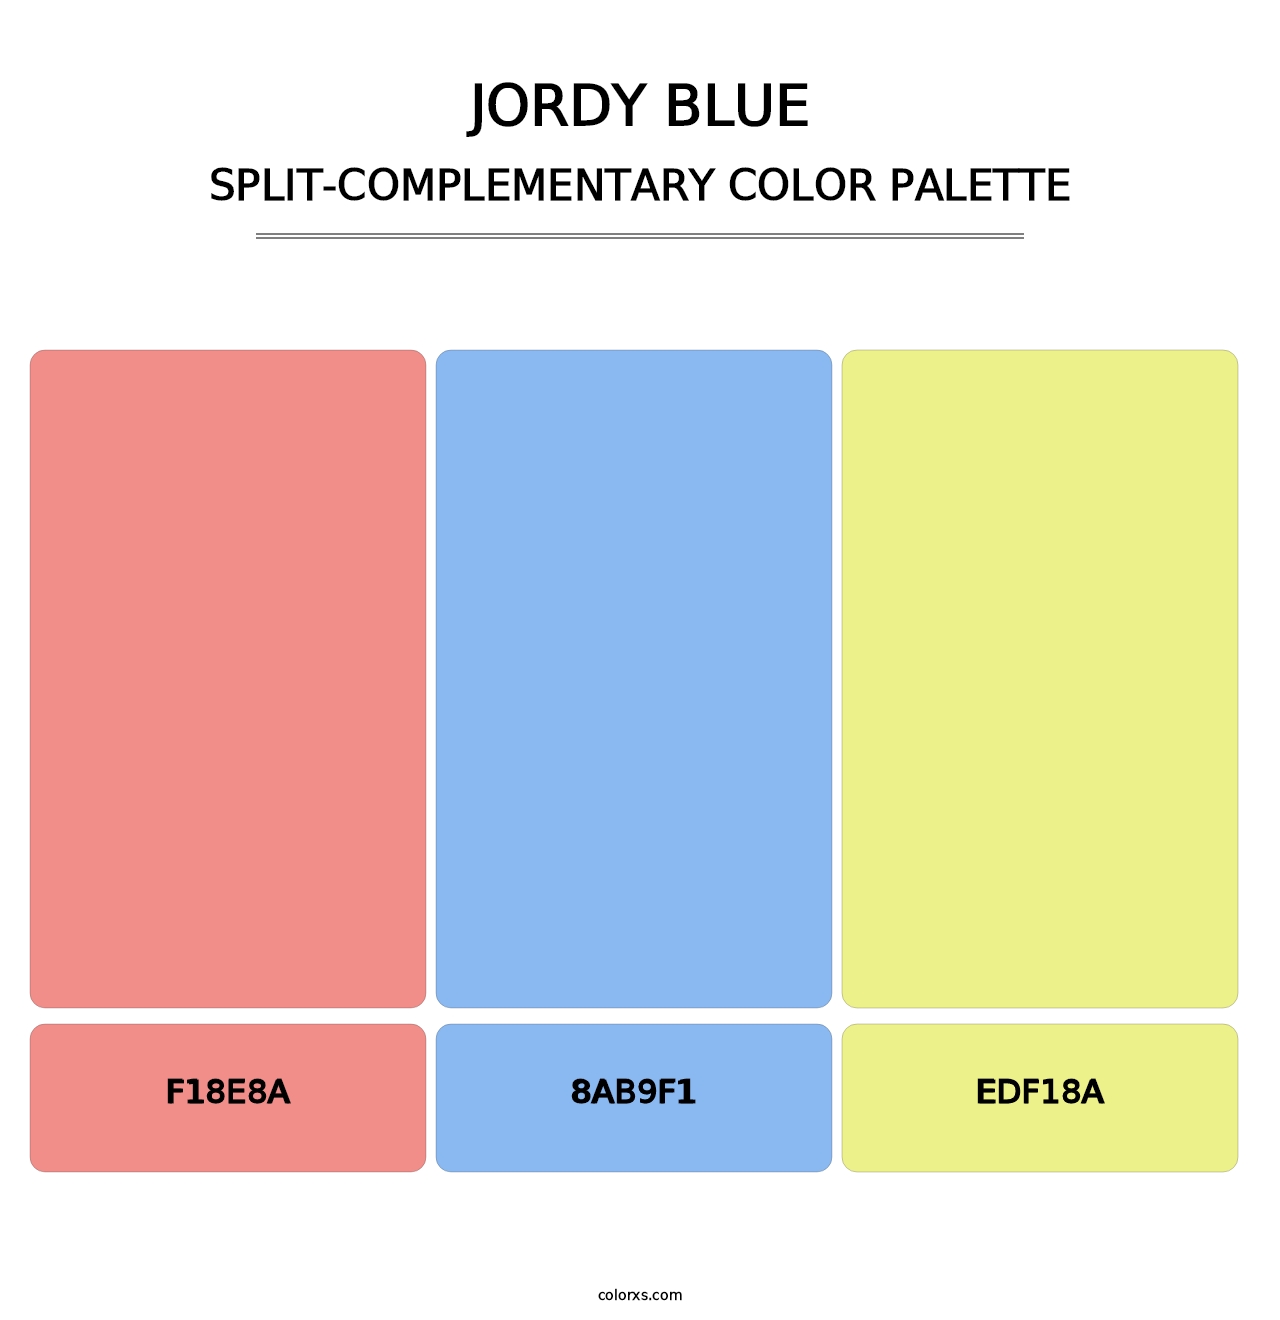 Jordy Blue - Split-Complementary Color Palette